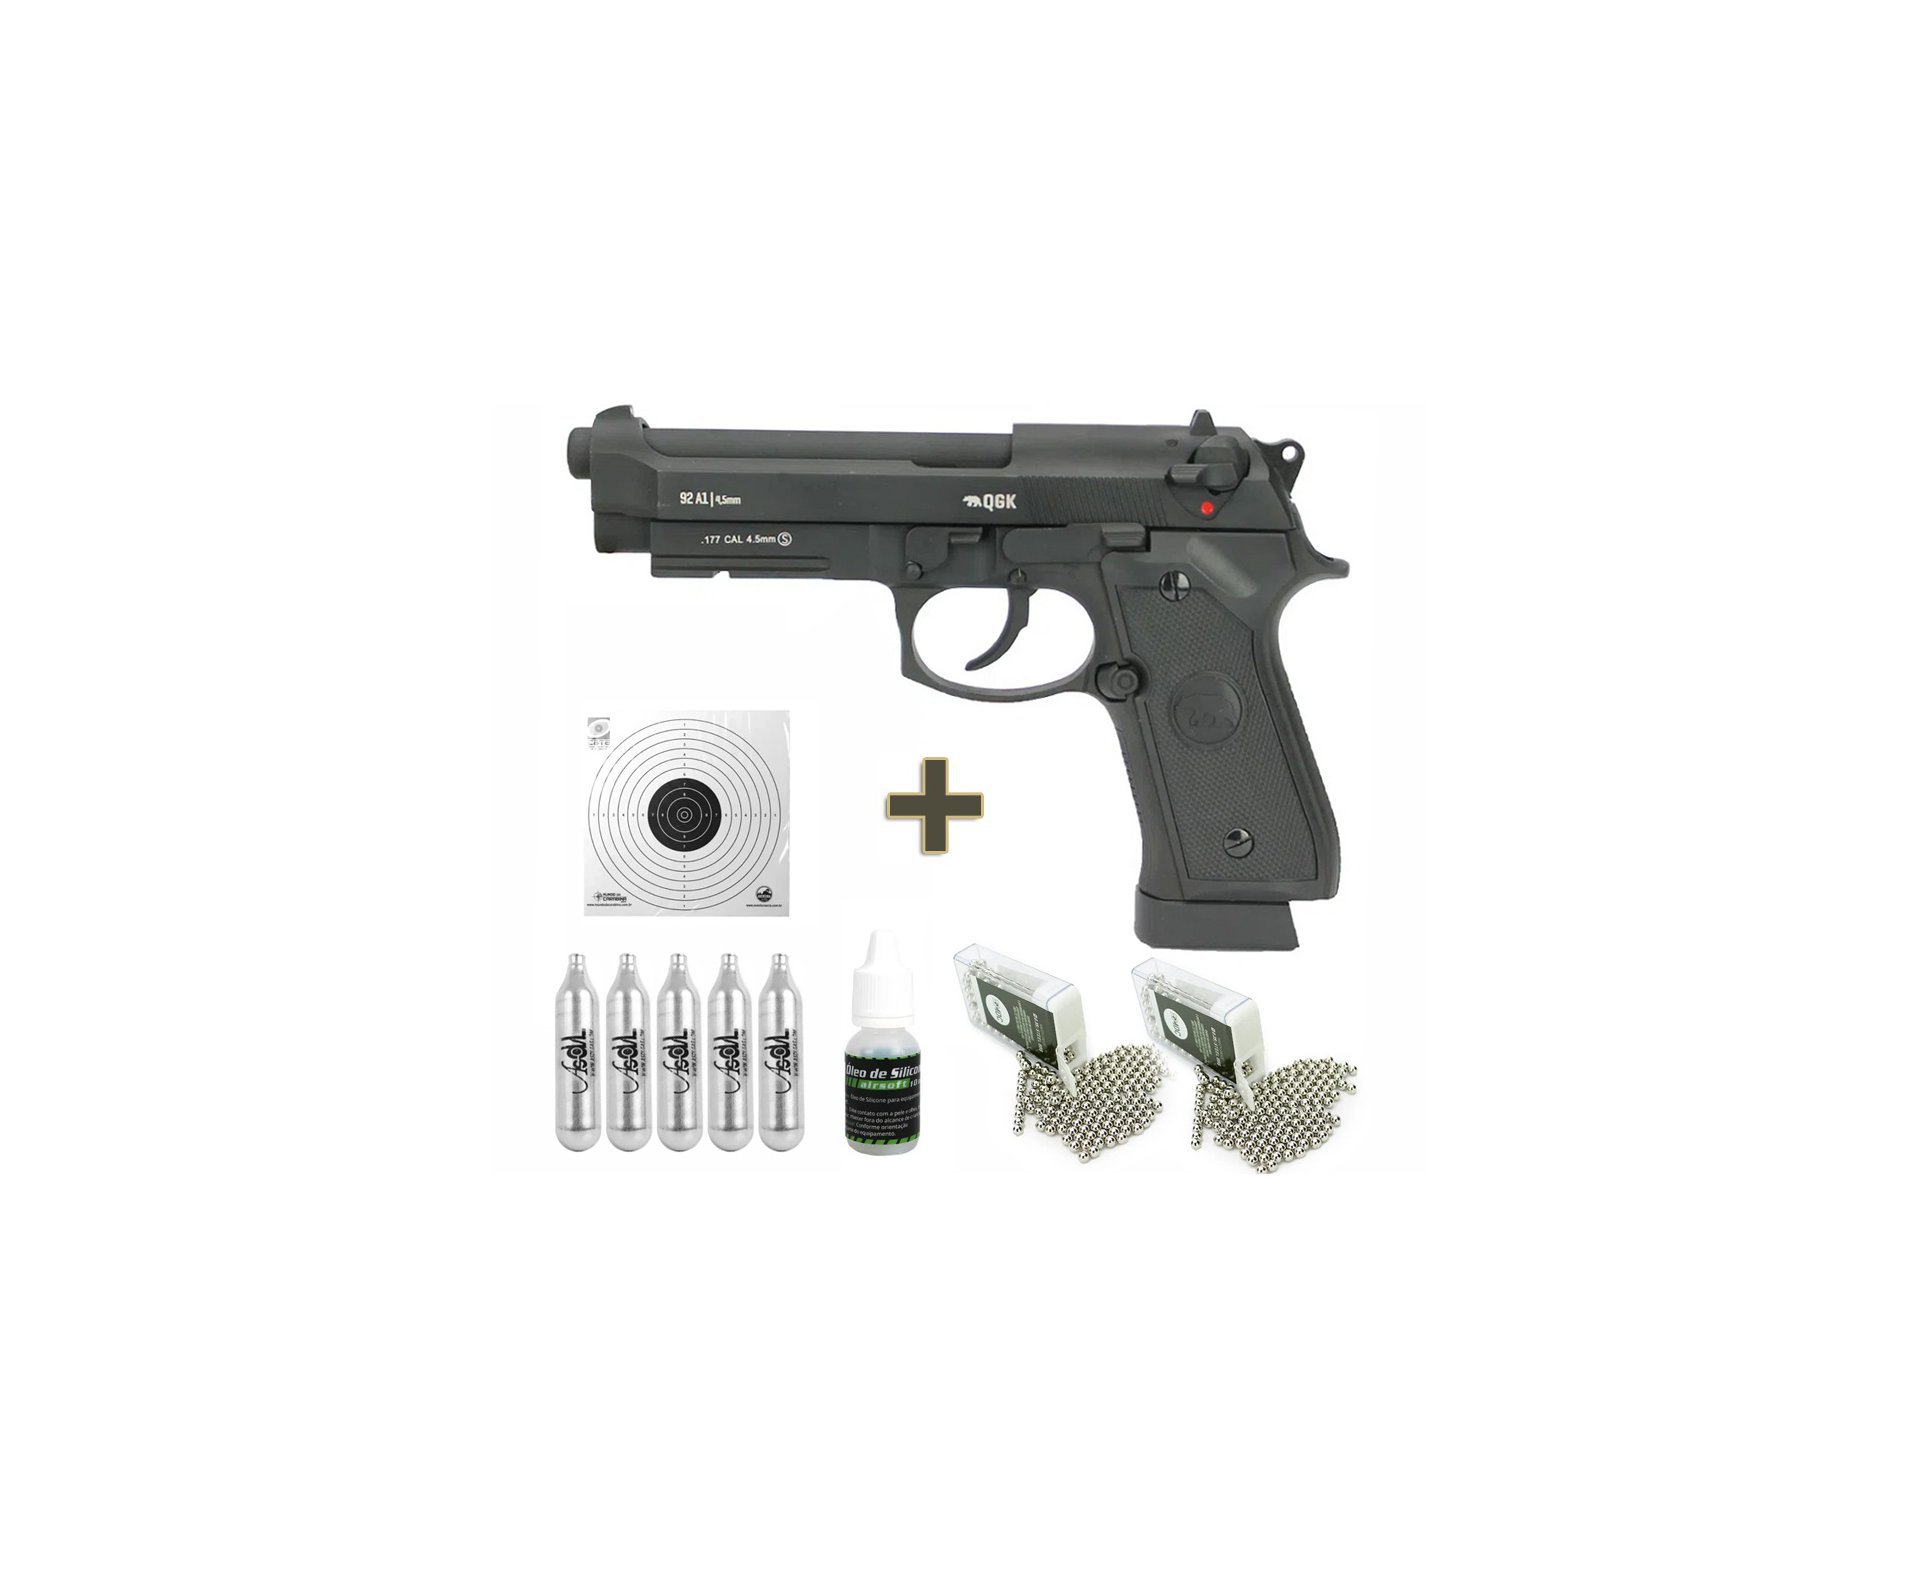 Pistola de Pressão CO2 GBB M92A1 Beretta Full Metal Blowback 4.5mm + Case - QGK + Co2 + Munição + Alvos + Óleo de silicone